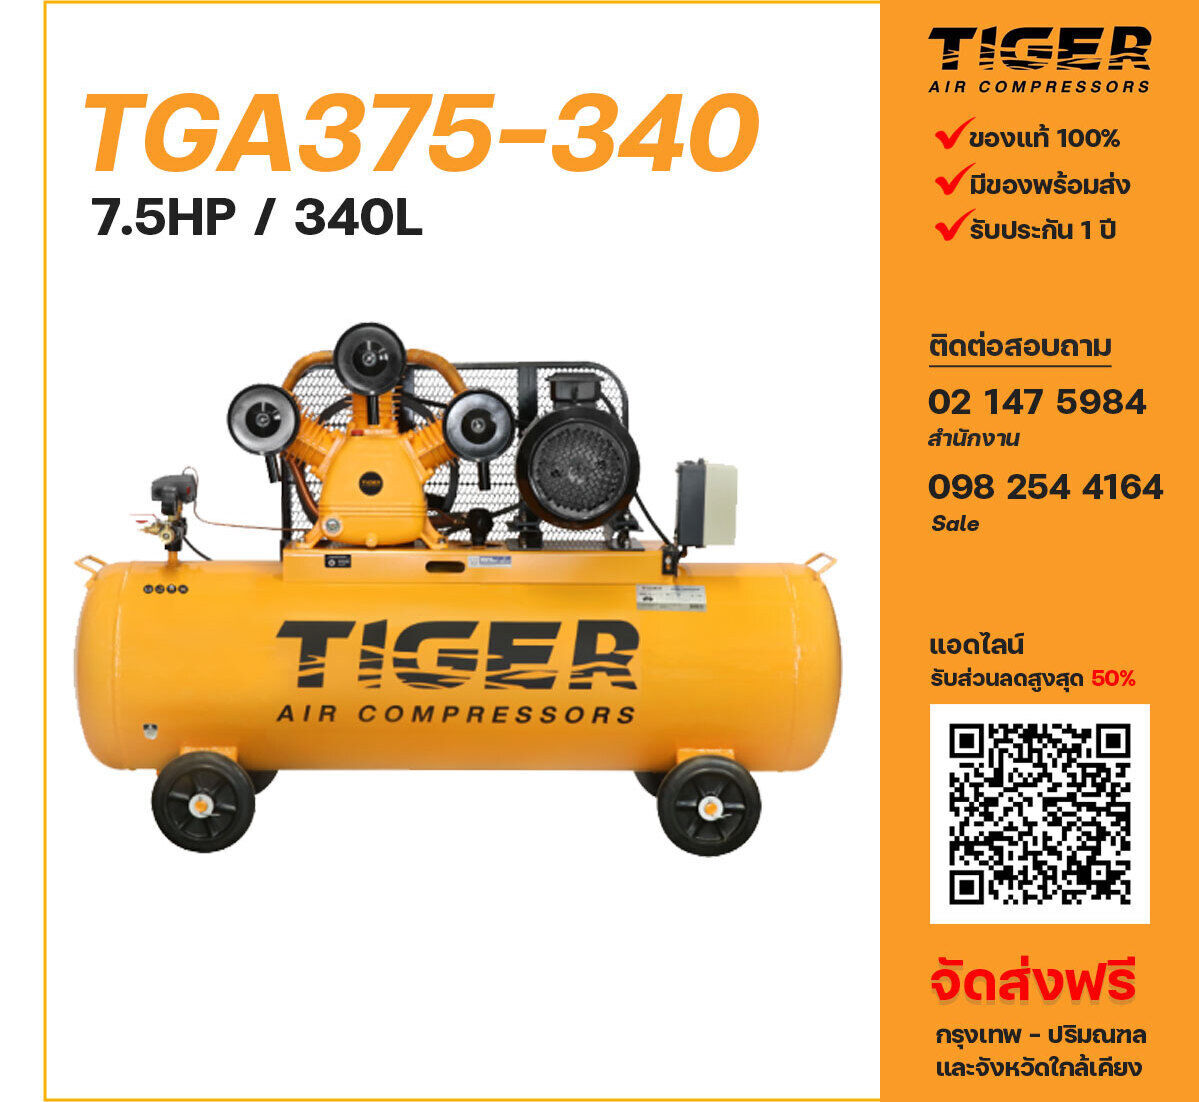 ปั๊มลมไทเกอร์ TIGER TGA375-340 380V ปั๊มลมลูกสูบ ขนาด 3 สูบ 7.5 แรงม้า 340 ลิตร TIGER พร้อมมอเตอร์ ไฟ 380V ส่งฟรี กรุงเทพฯ-ปริมณฑล รับประกัน 1 ปี